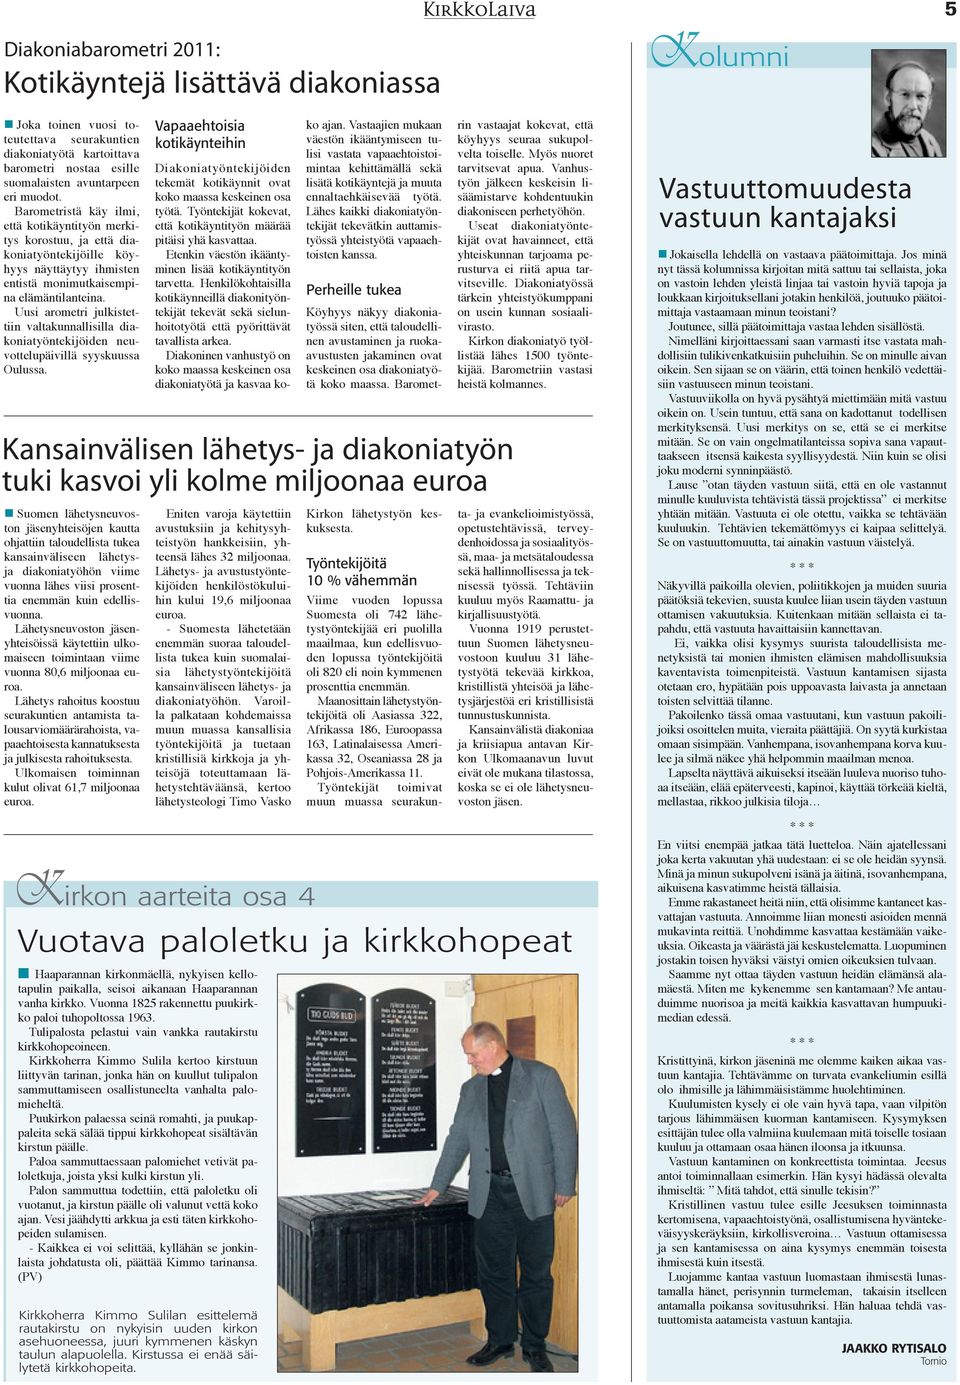 Uusi arometri julkistettiin valtakunnallisilla diakoniatyöntekijöiden neuvottelupäivillä syyskuussa Oulussa.